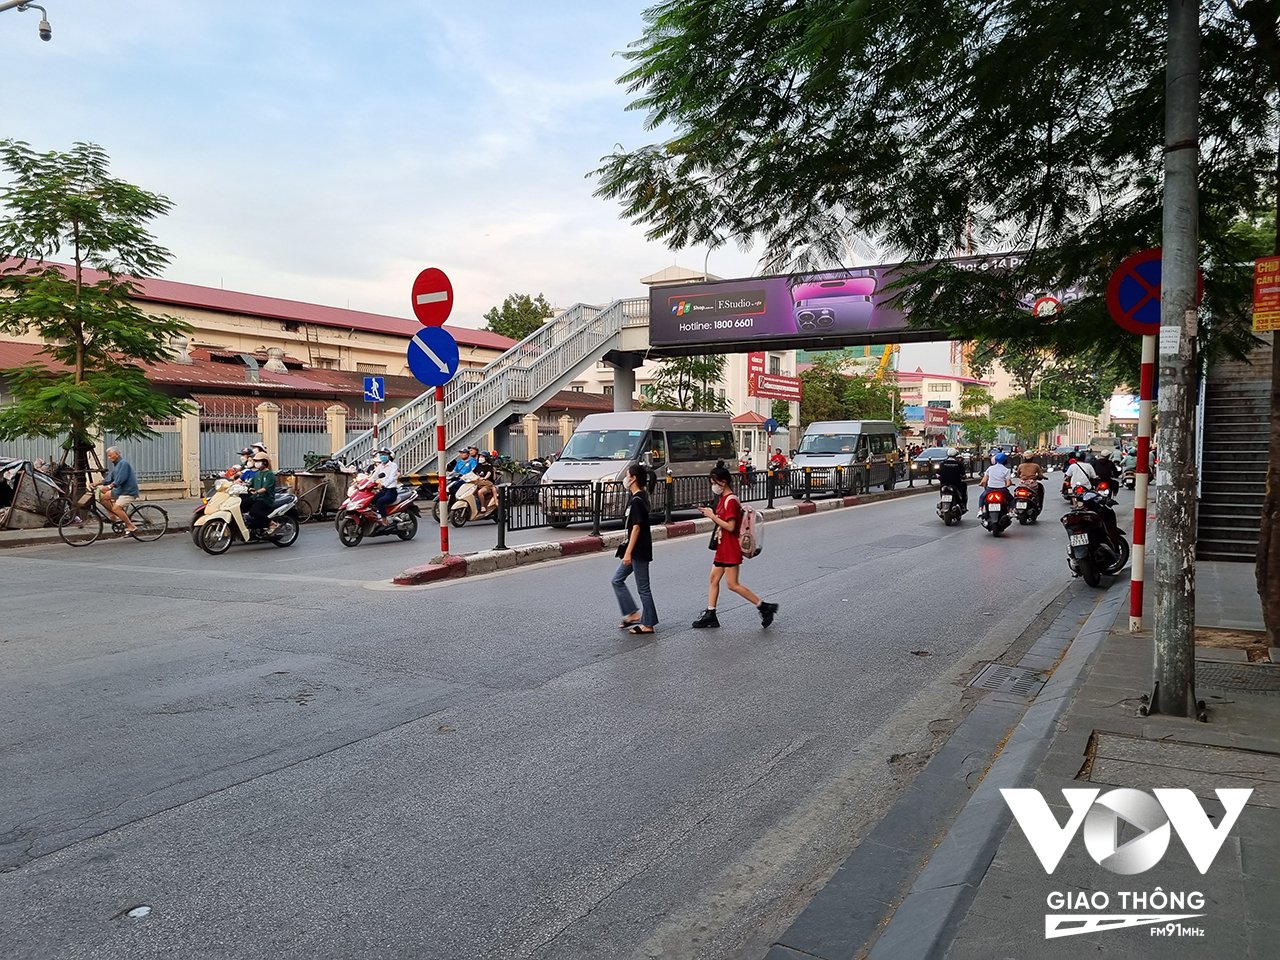 Việc người đi bộ ''ngó lơ'' cầu bộ hành diễn ra rất phổ biến. Hình ảnh được ghi nhận tại phố Chùa Bộc, đoạn qua Học viện Ngân hàng.